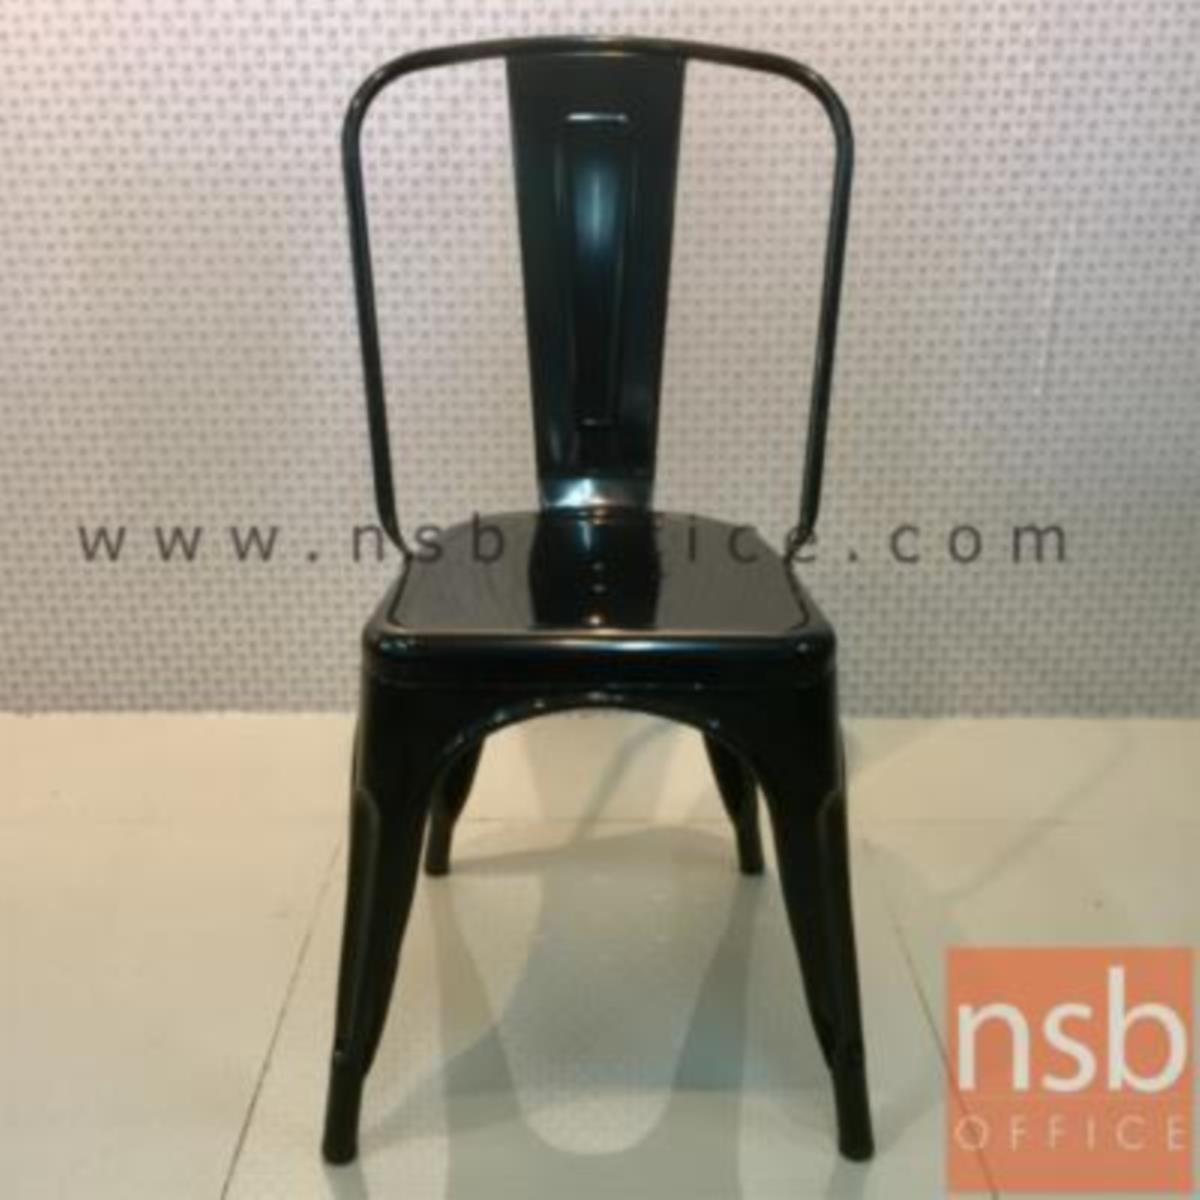 เก้าอี้โมเดิร์นเหล็ก รุ่น Belegost (เบเลกอสต์)  สีดำ